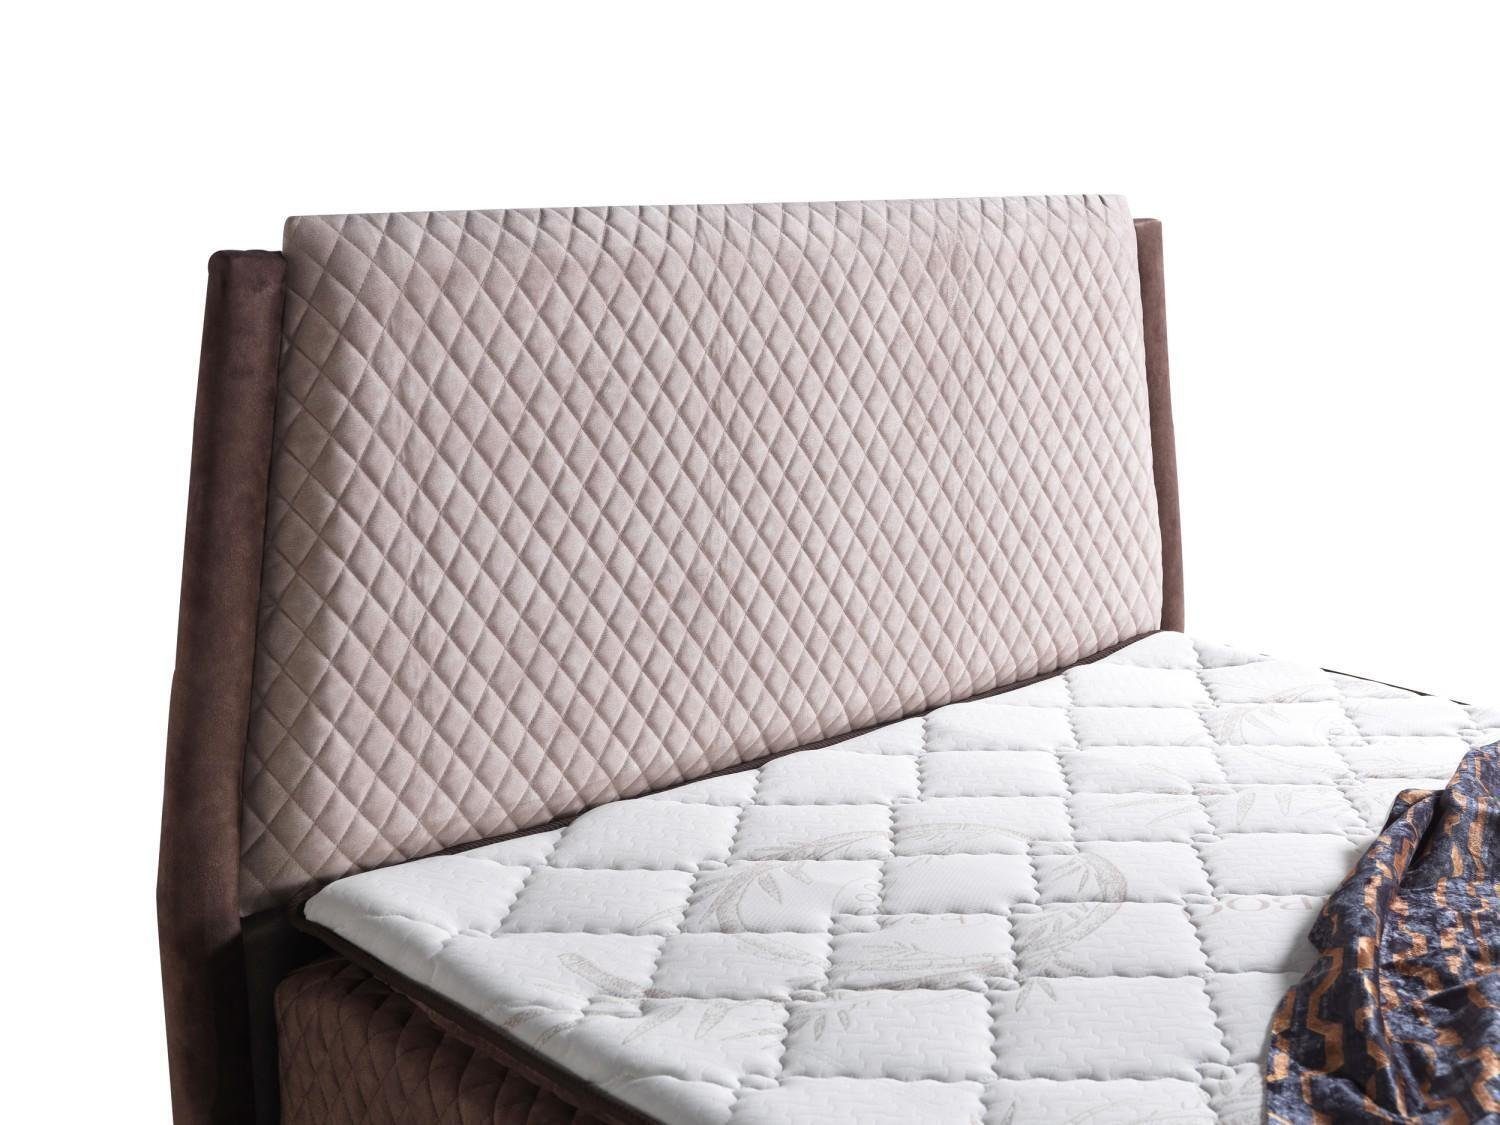 JVmoebel Bett Luxus Europe Betten In Boxspring Bett Betten Polster Möbel Design (Bett), Made Schlafzimmer